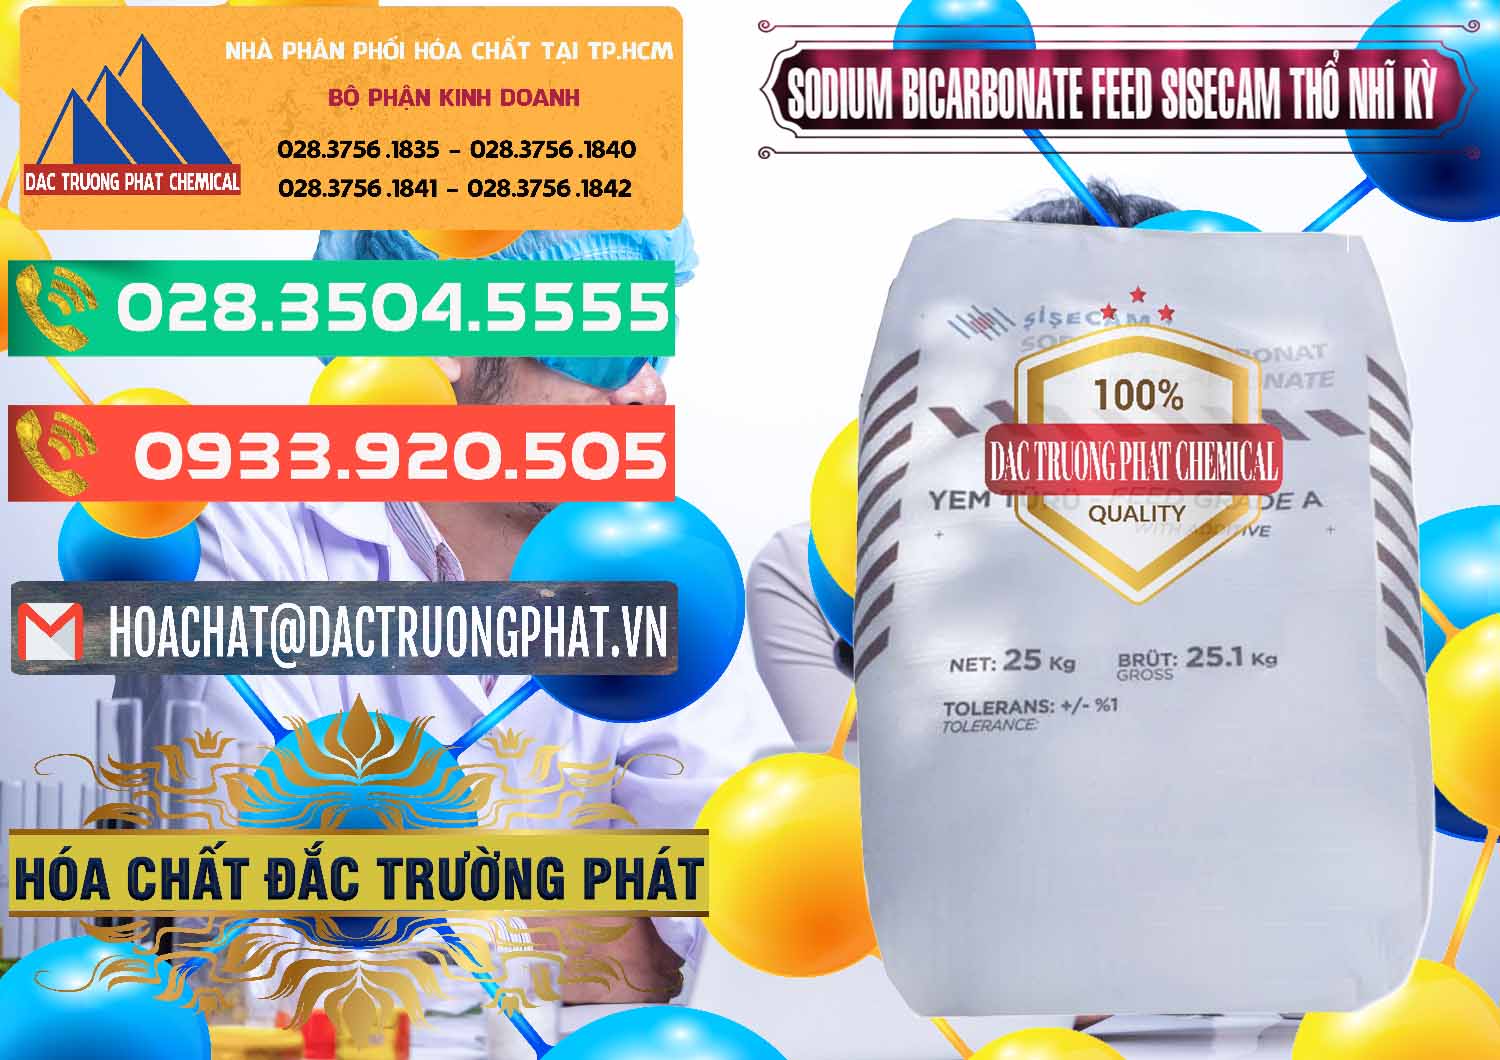 Bán ( cung cấp ) Sodium Bicarbonate – Bicar NaHCO3 Feed Grade Thổ Nhĩ Kỳ Turkey - 0265 - Cty chuyên bán và cung cấp hóa chất tại TP.HCM - congtyhoachat.com.vn